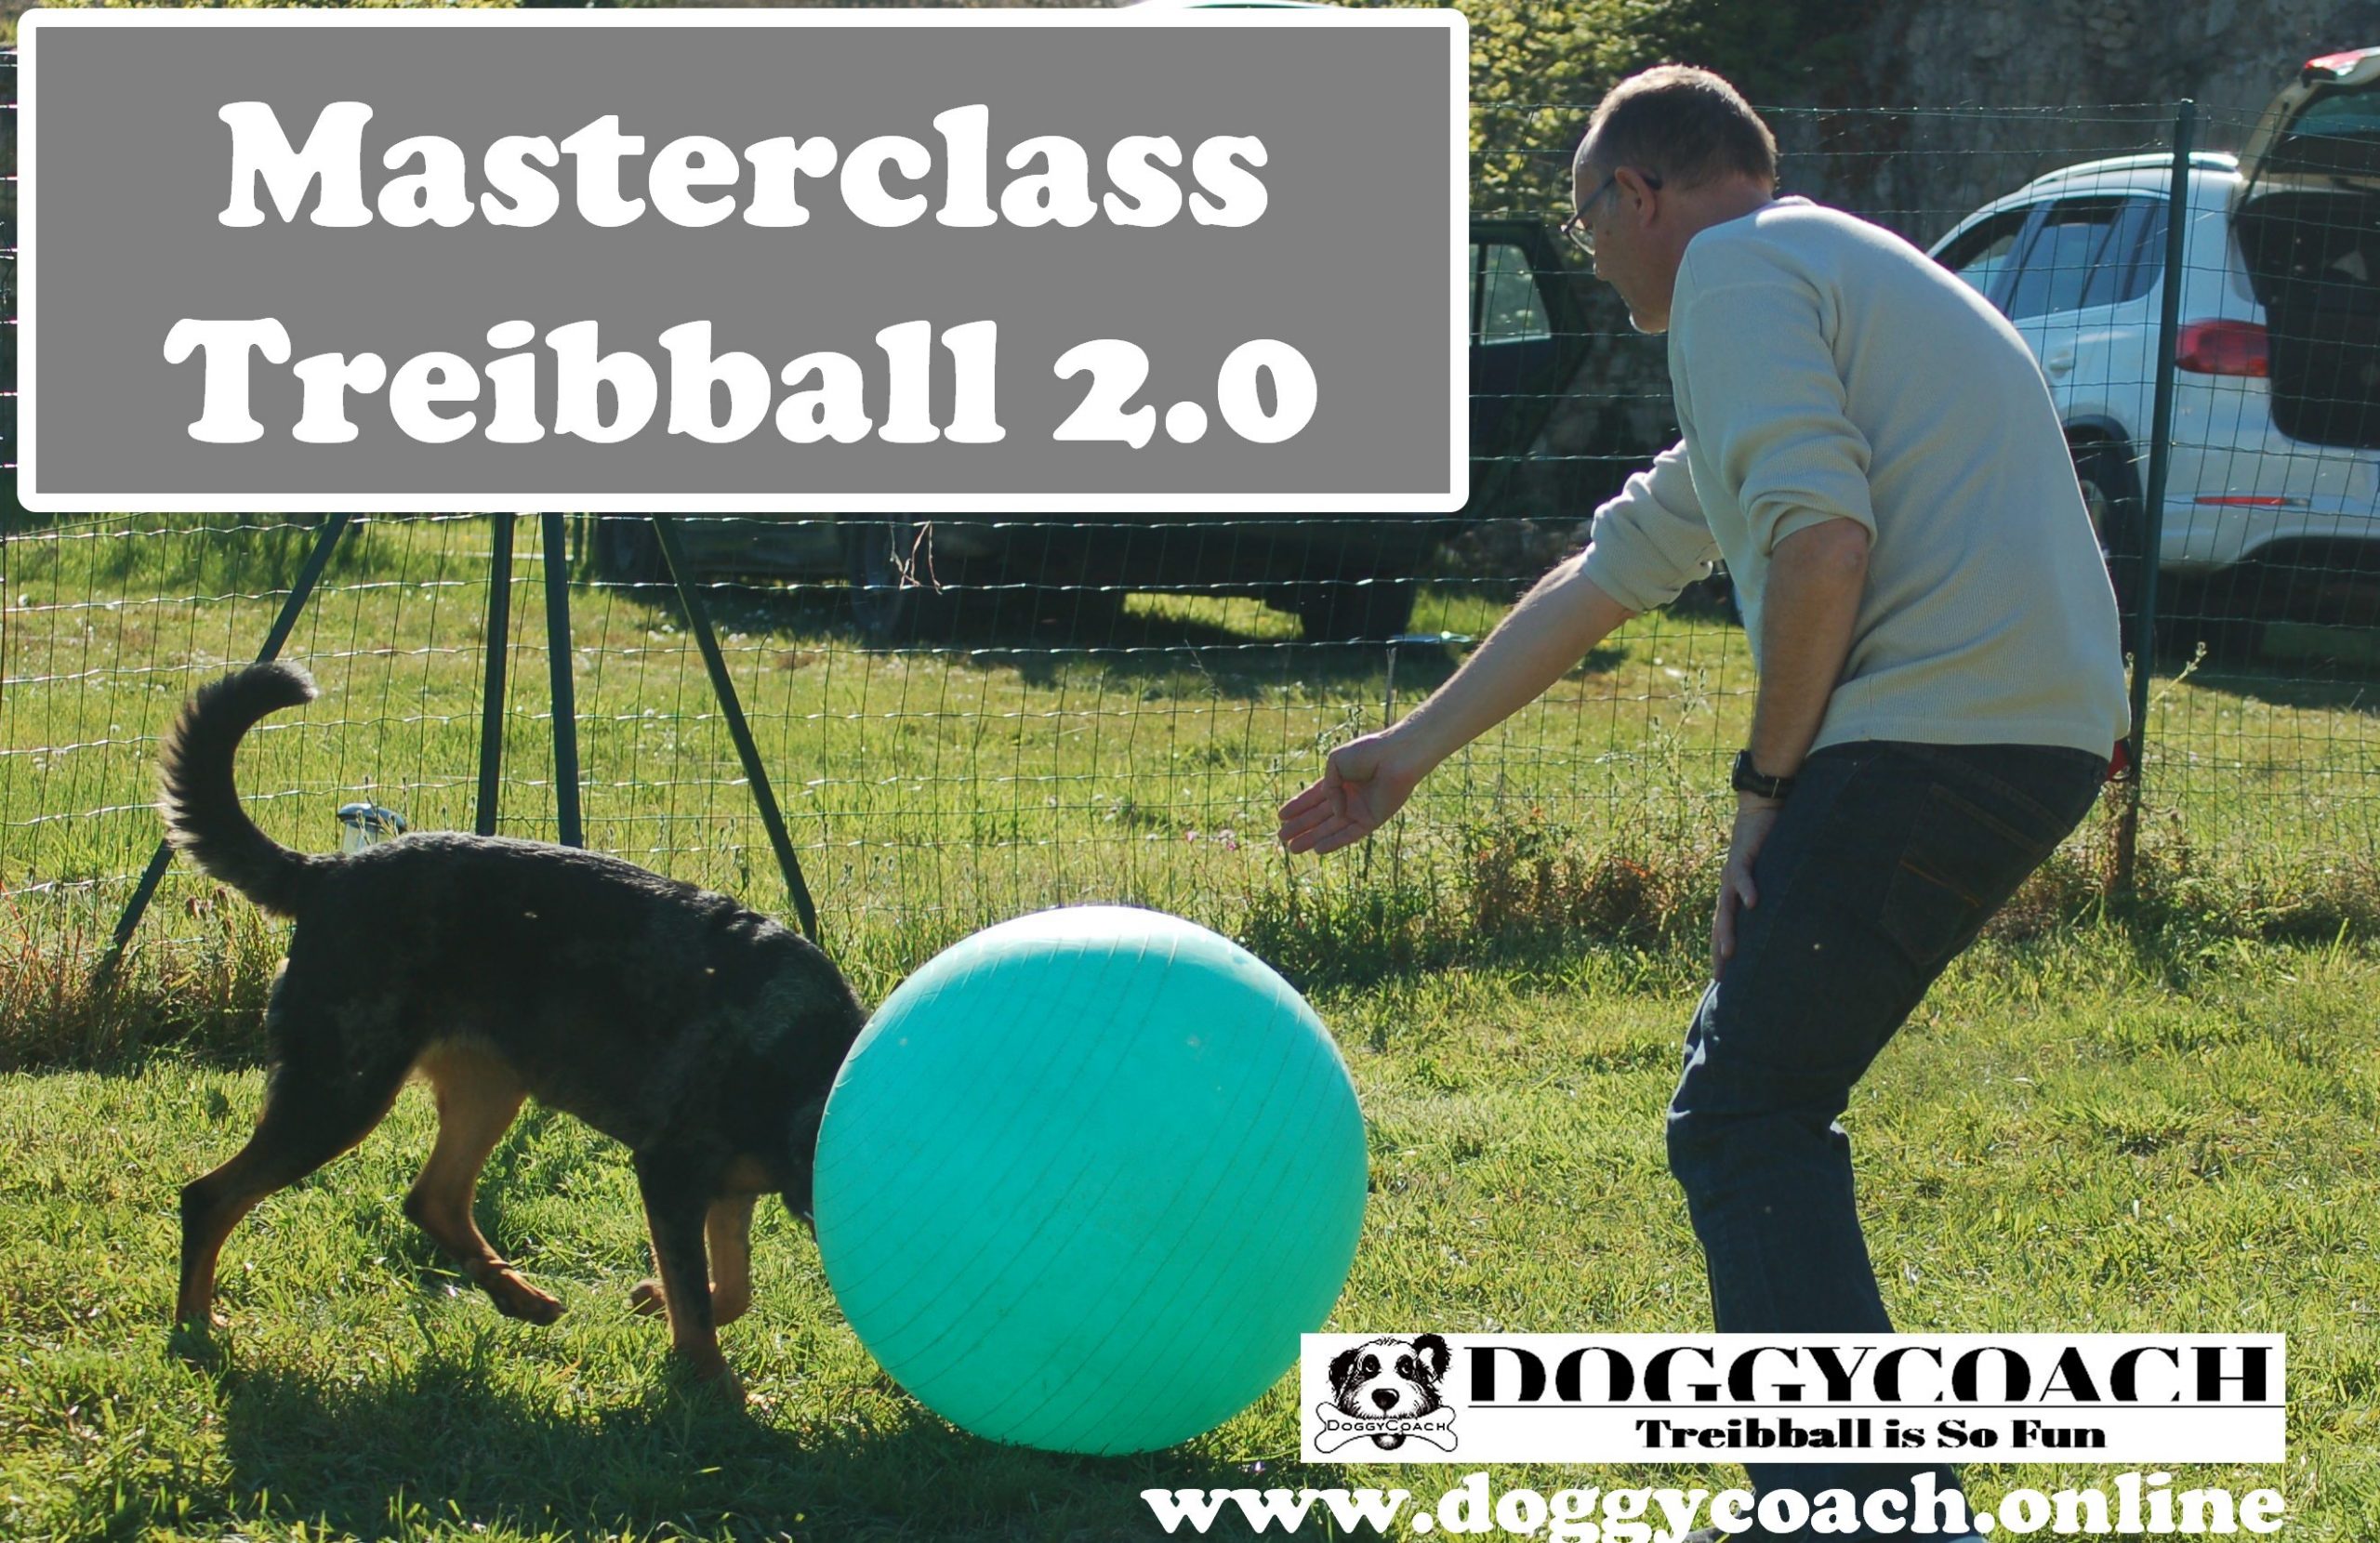 masterclass treibball 2-0-j-5 cours en ligne pour apprendre à jouer au treibball by Doggycoach